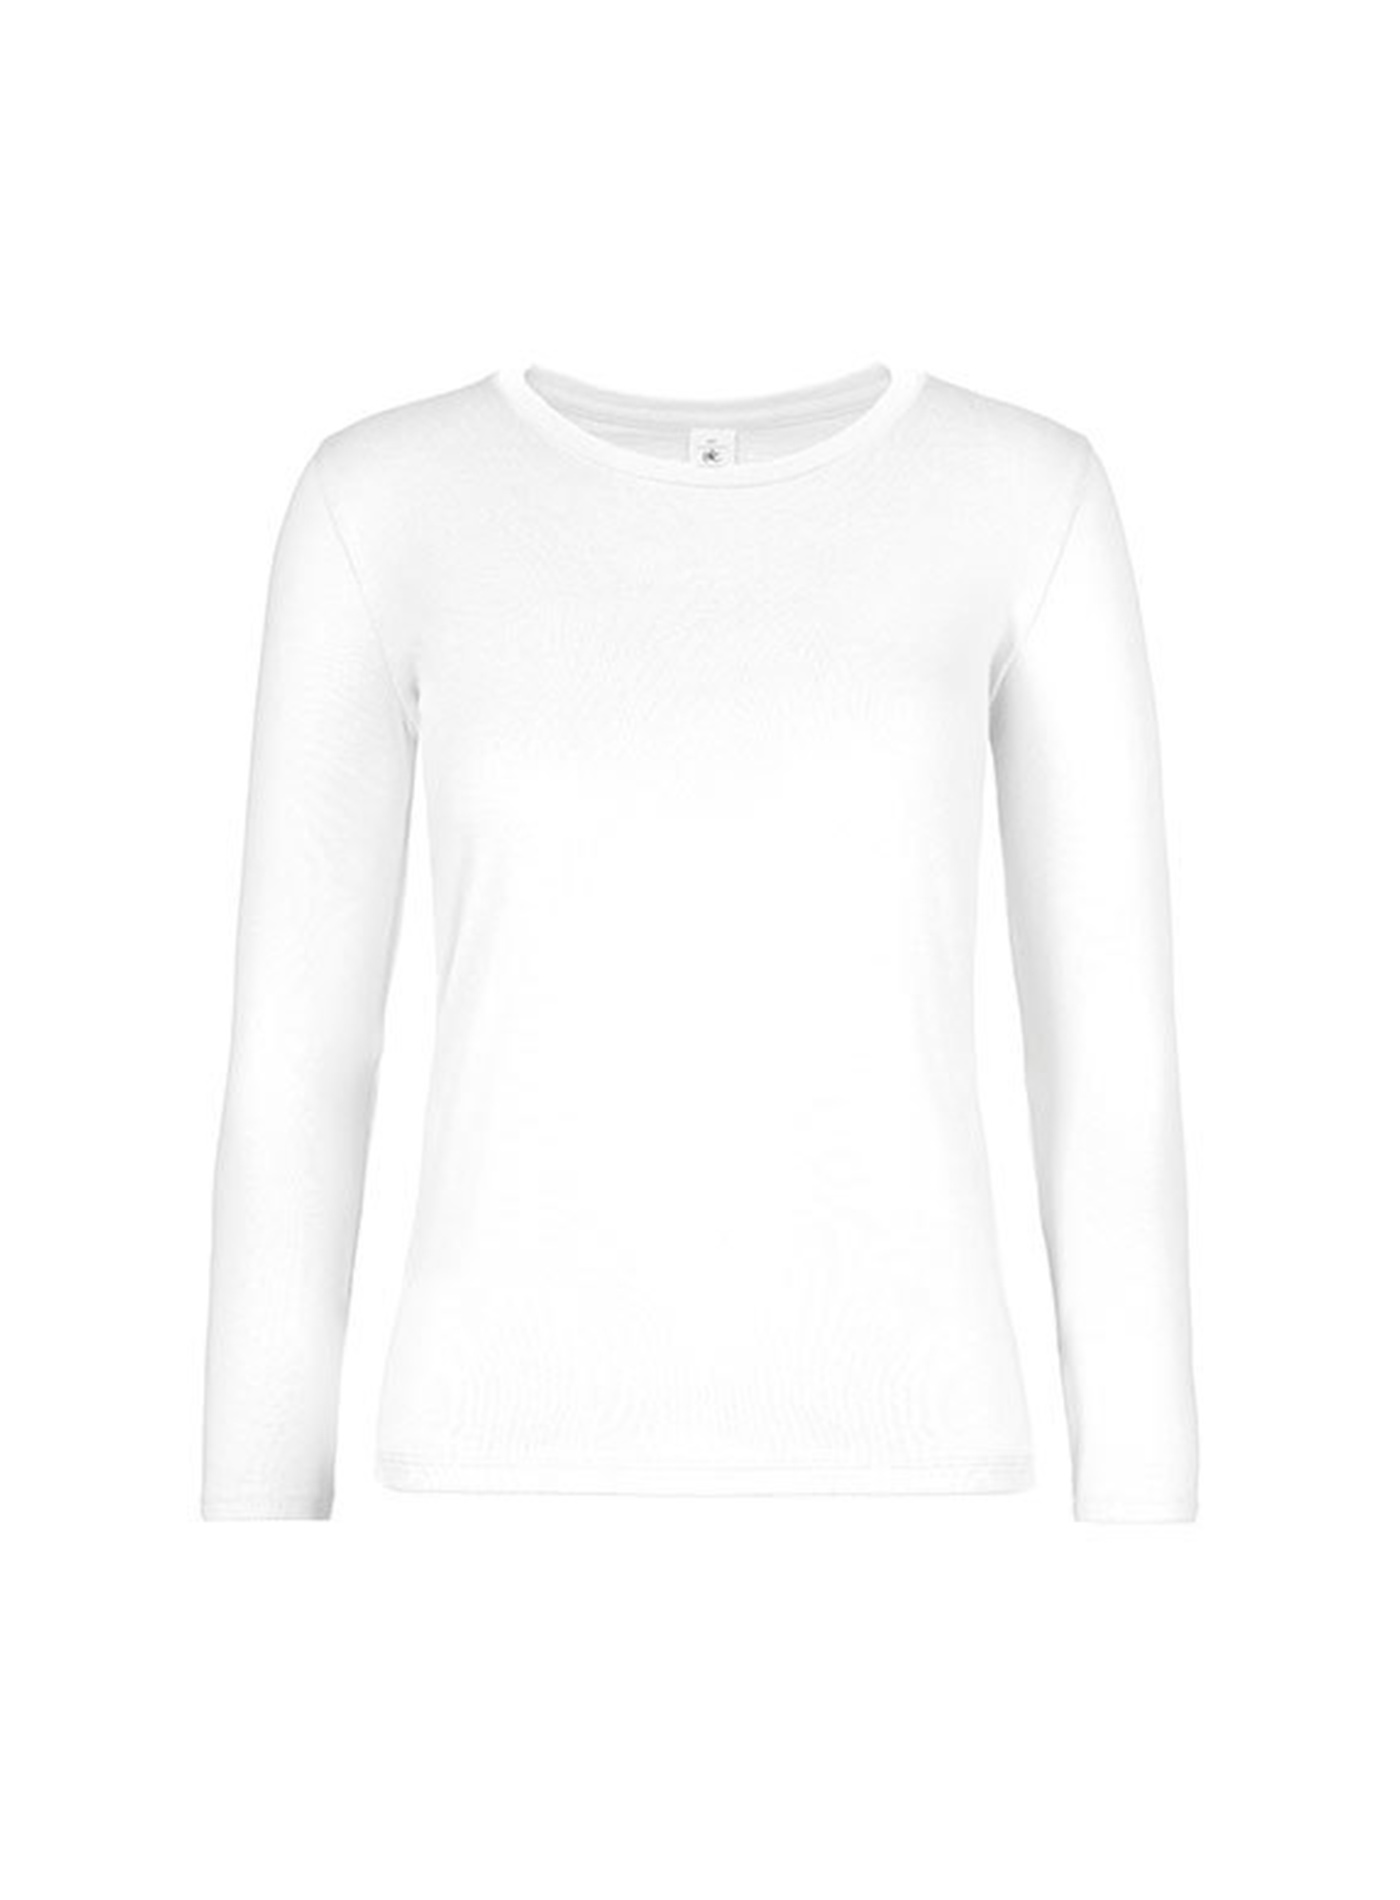 Dámské tričko s dlouhým rukávem B&C Collection - Bílá L